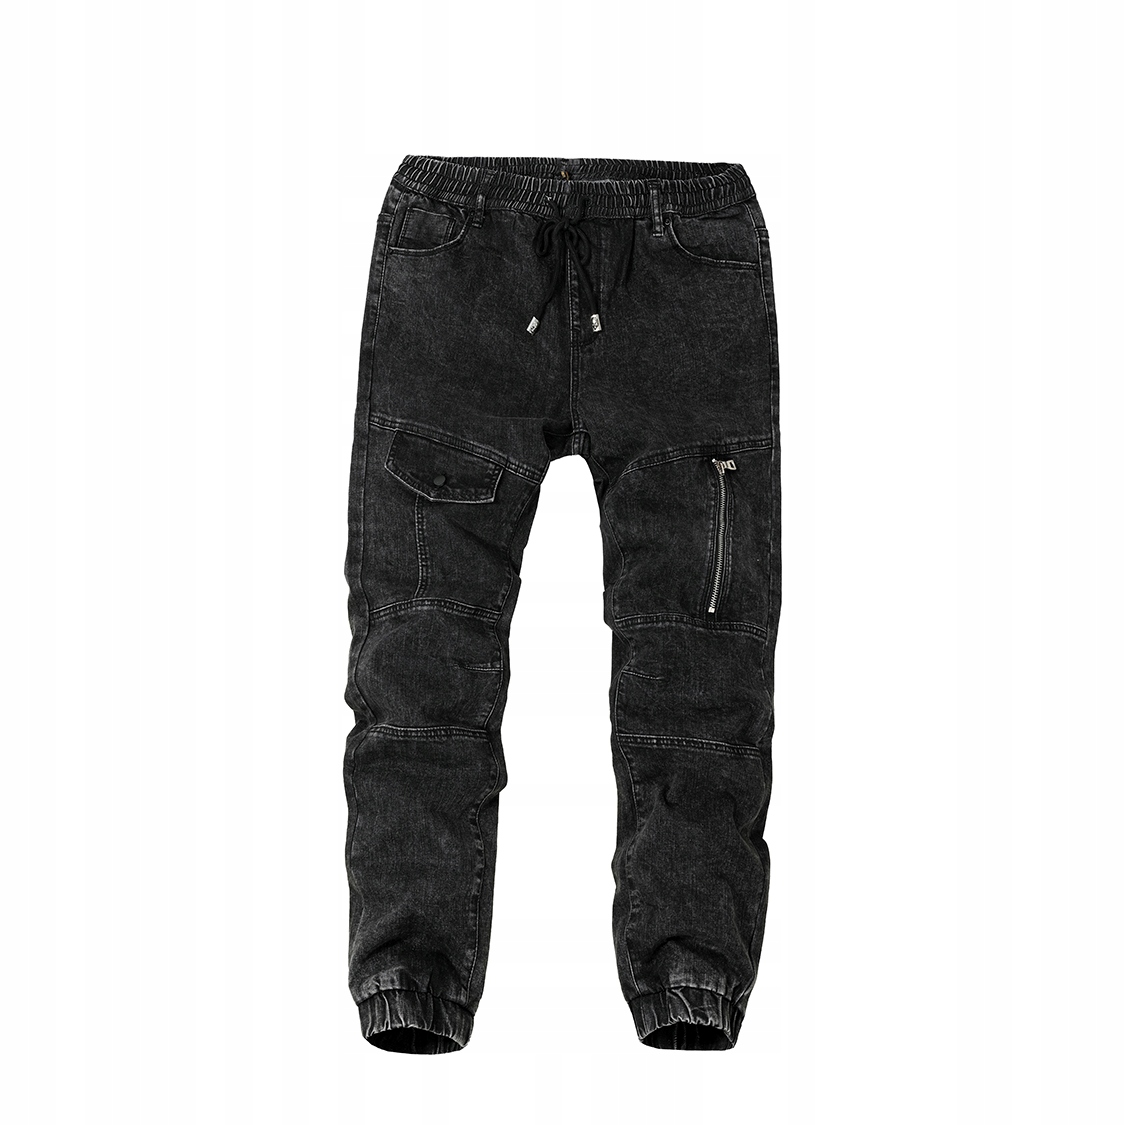 Čierne pánske džínsové nohavice joggery s gumou - L